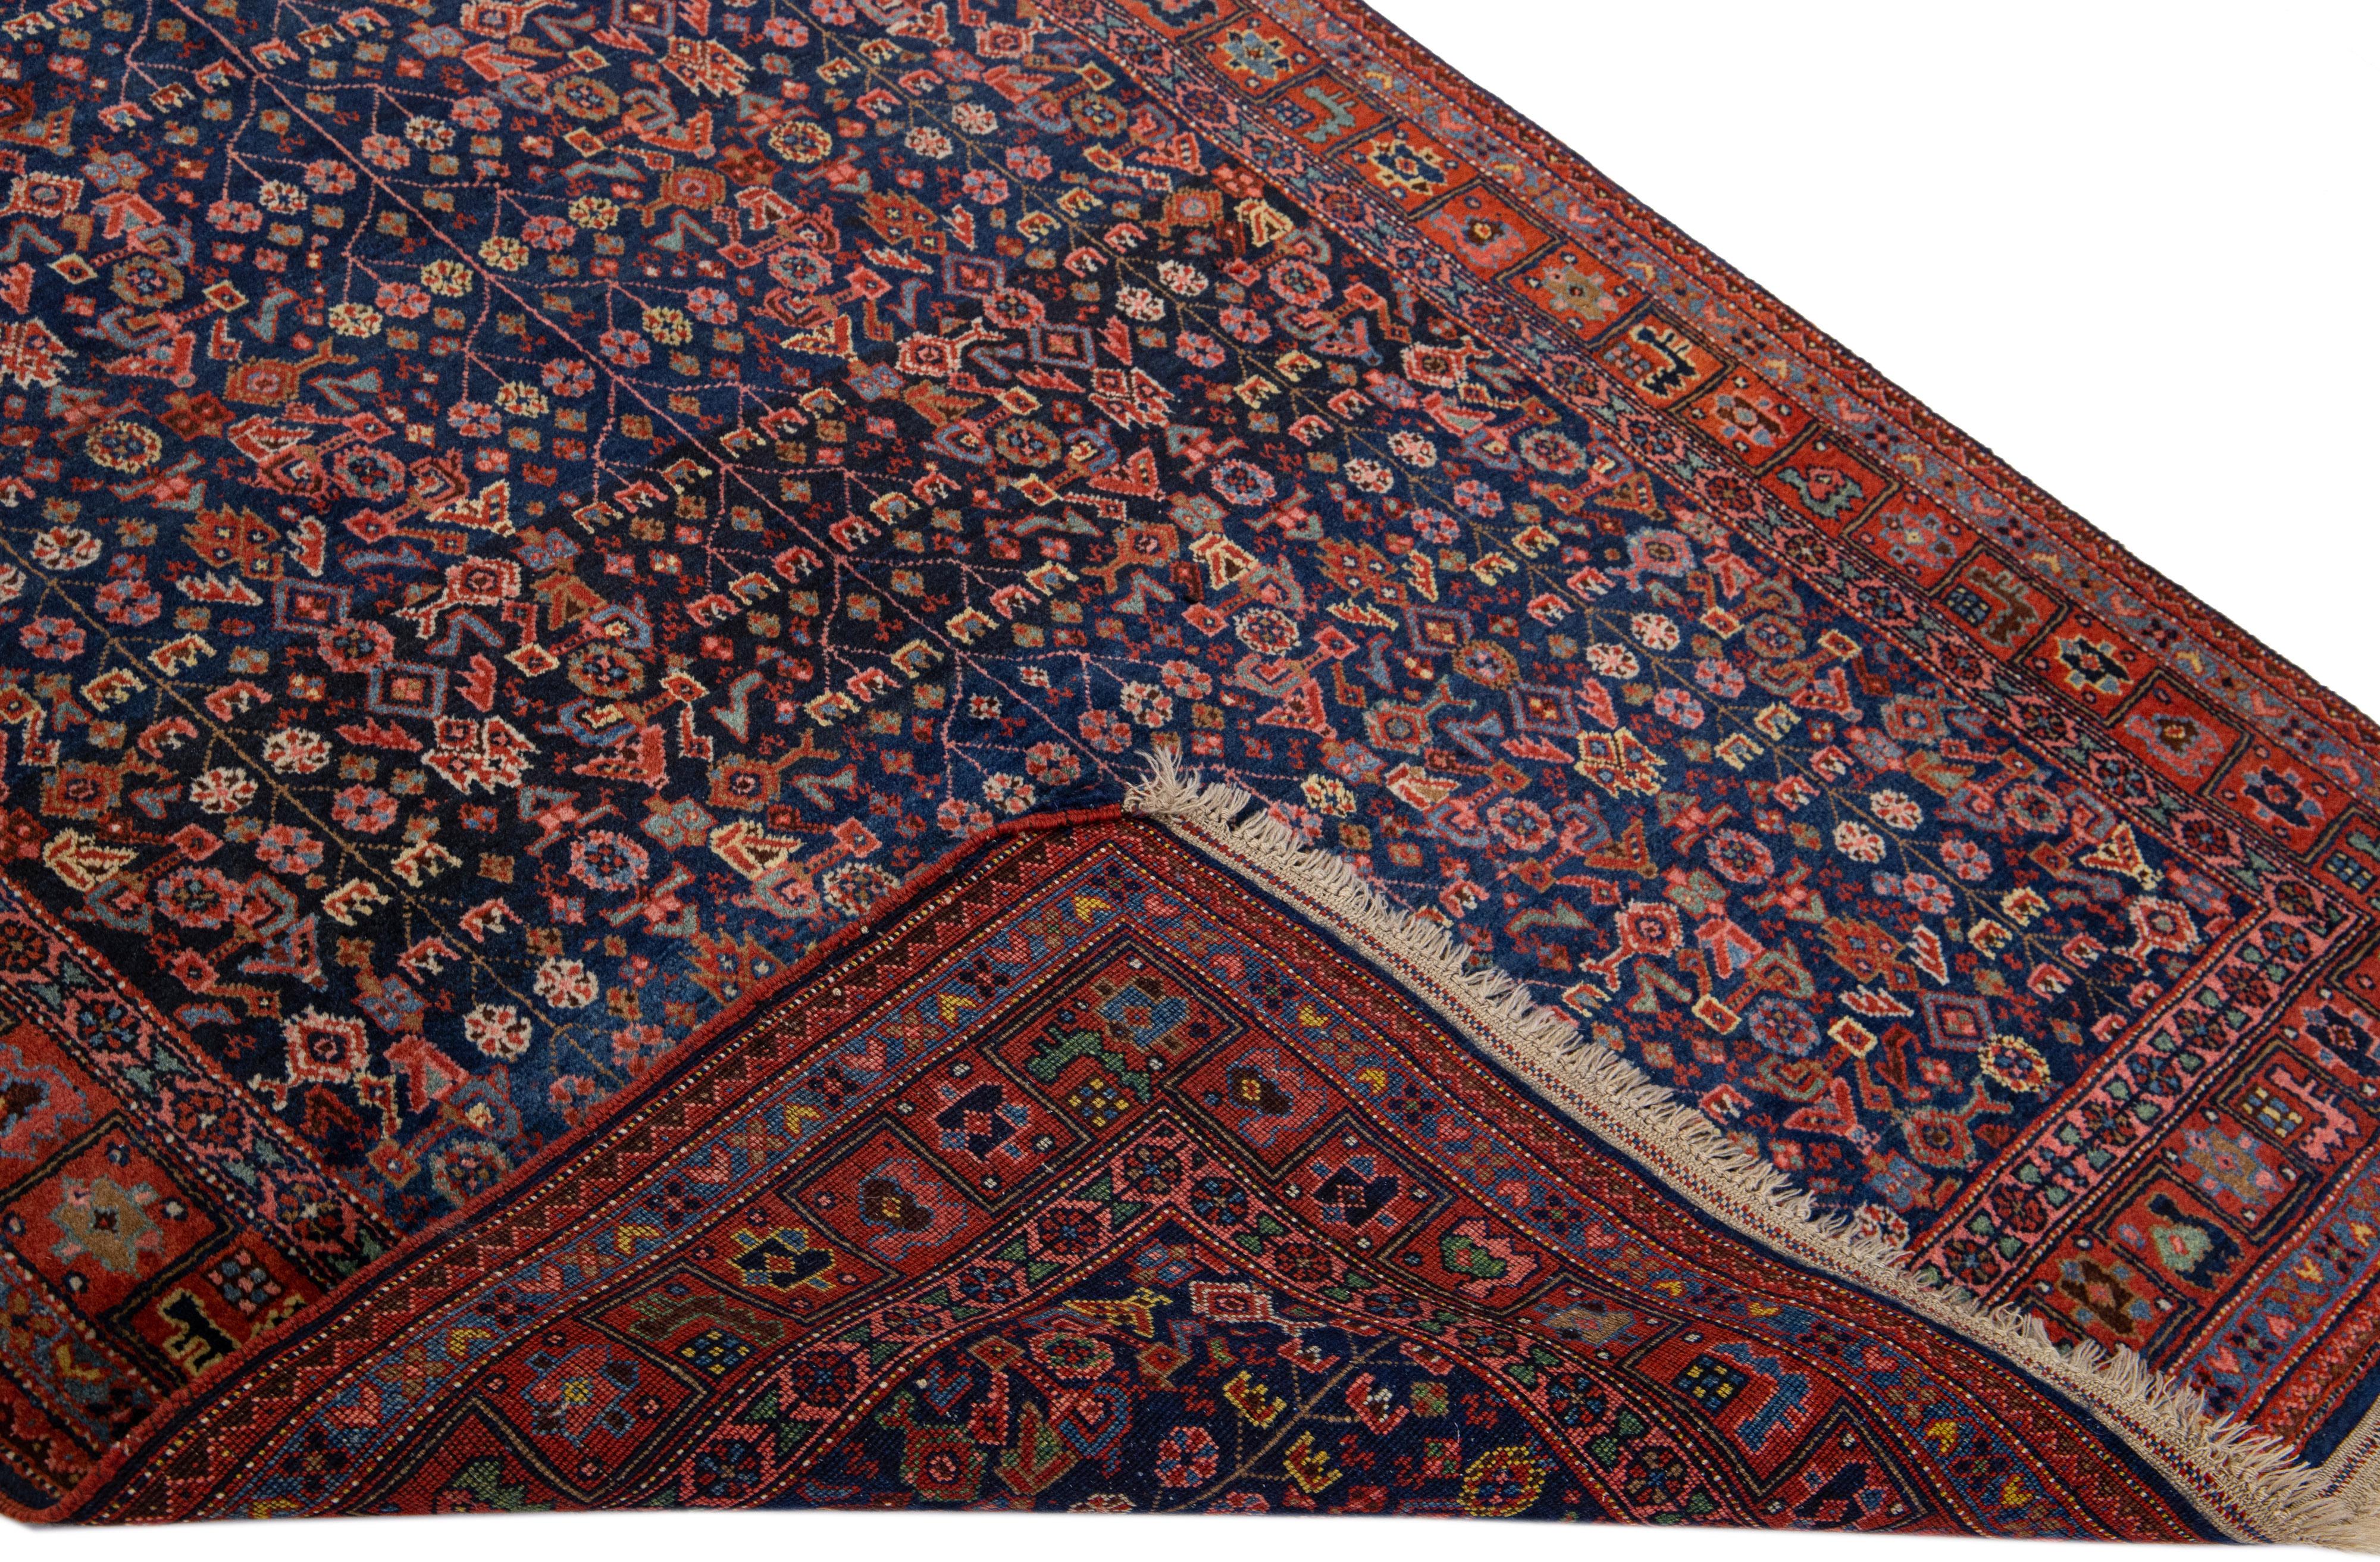 Magnifique tapis antique persan Bidjar en laine nouée à la main avec un champ rouille et bleu. Cette pièce présente un motif floral médaillon aux accents multicolores.

Ce tapis mesure 4'6